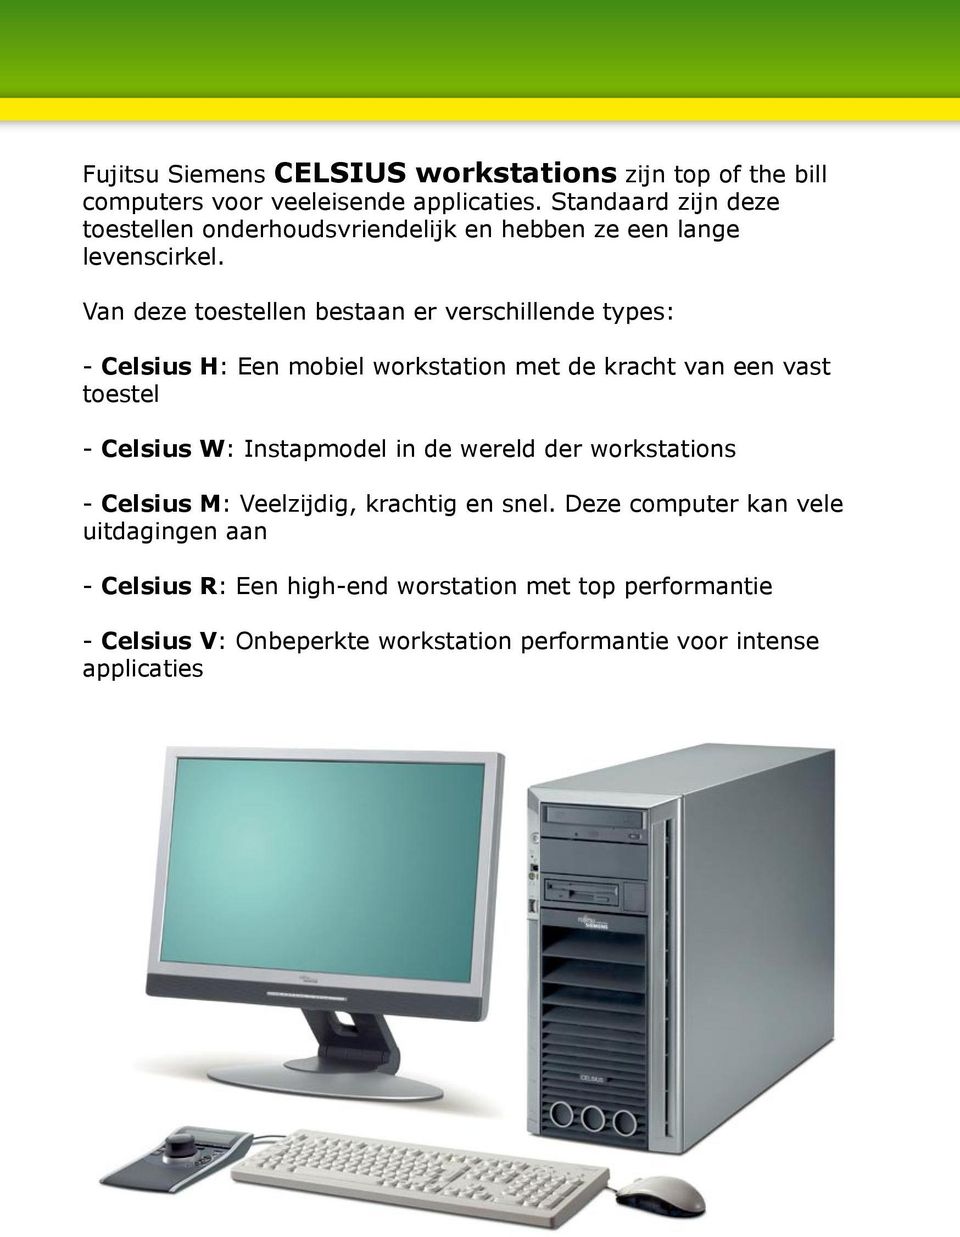 Van deze toestellen bestaan er verschillende types: - Celsius H: Een mobiel workstation met de kracht van een vast toestel - Celsius W: